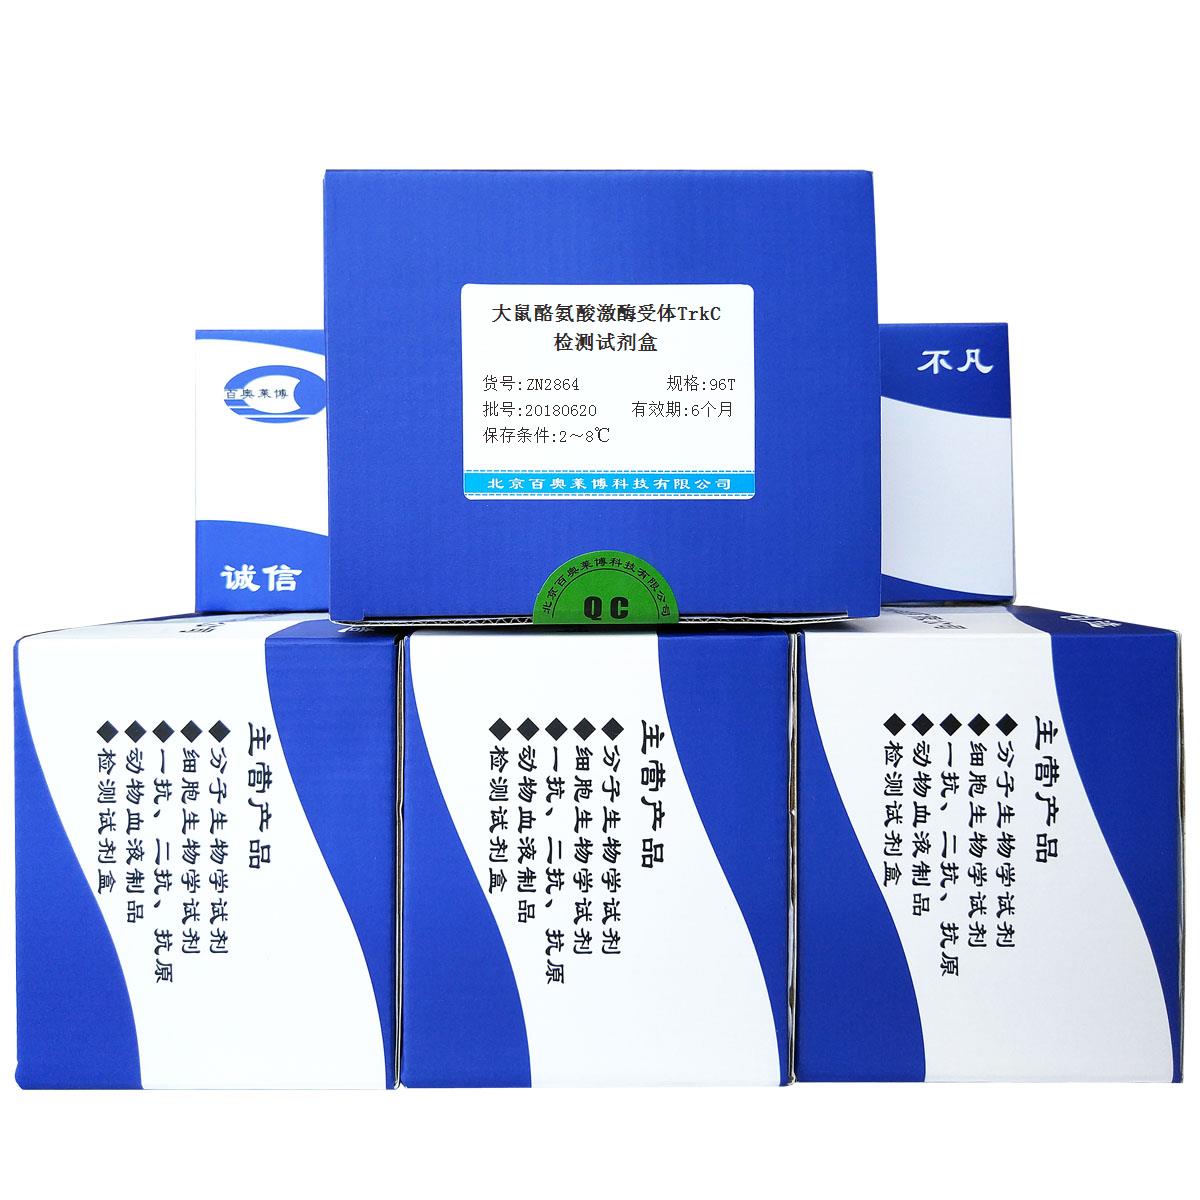 北京促销大鼠酪氨酸激酶受体TrkC检测试剂盒价格